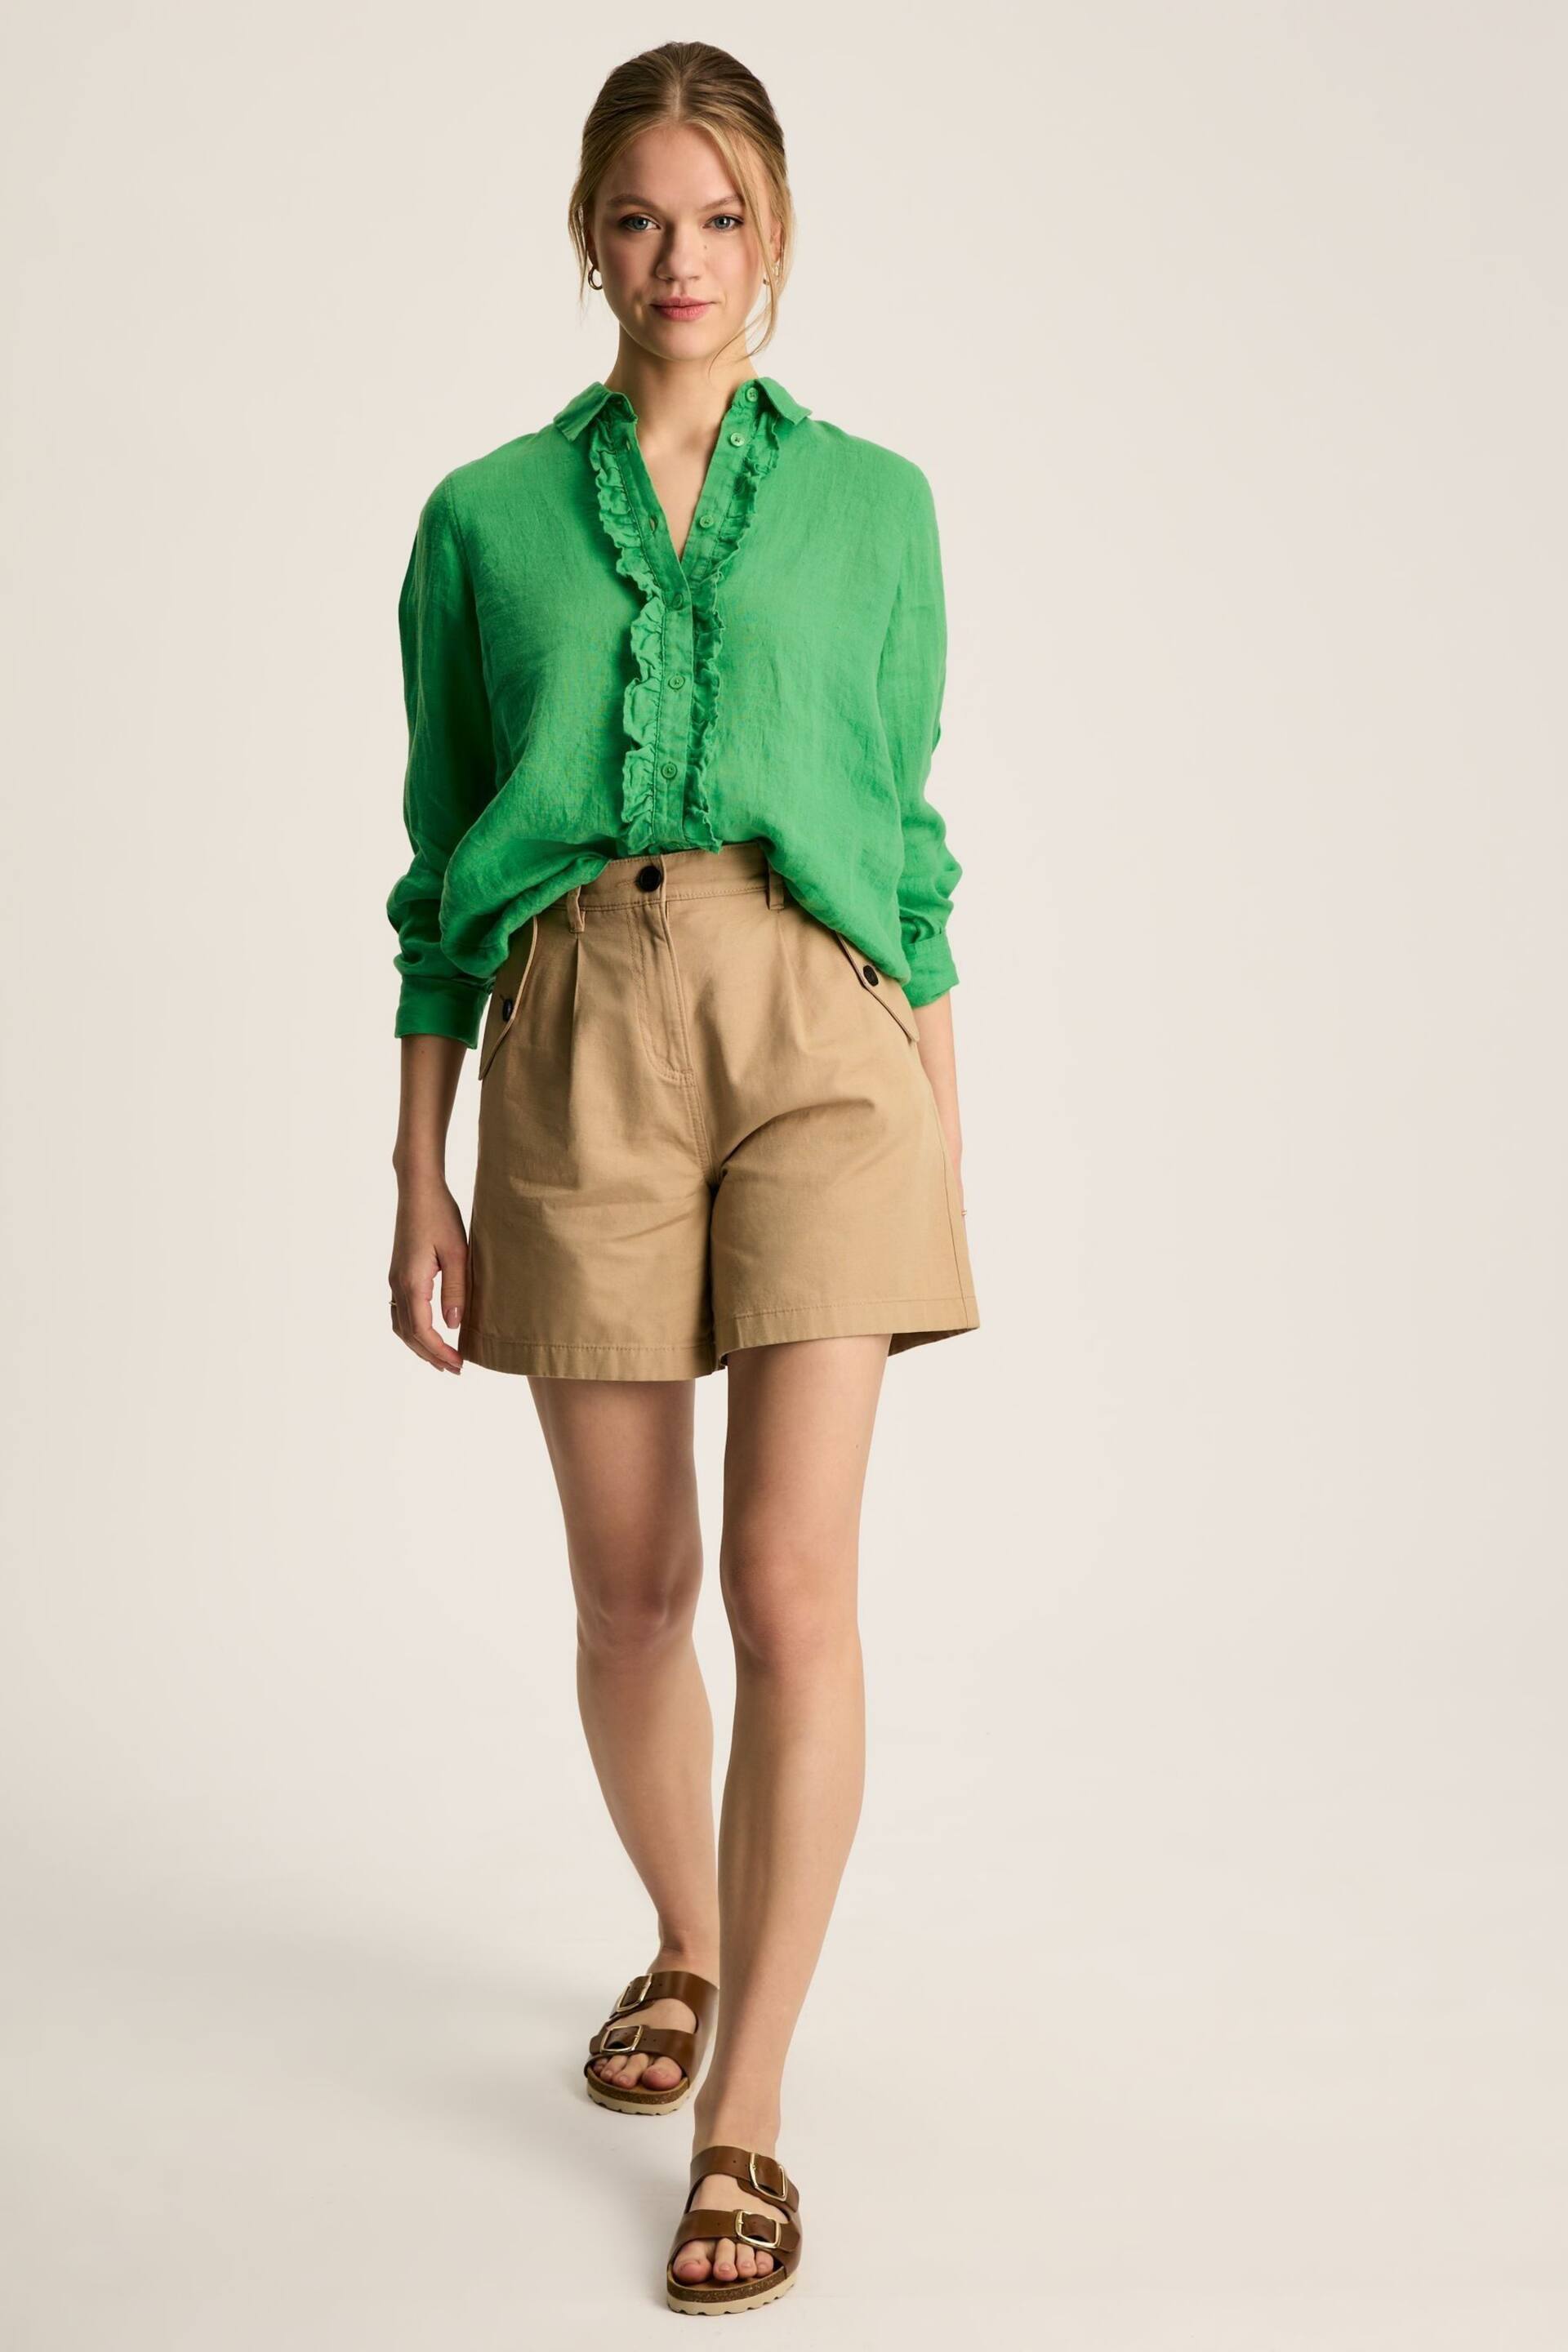 Joules Selene Green 100% Linen Shirt - Image 2 of 6